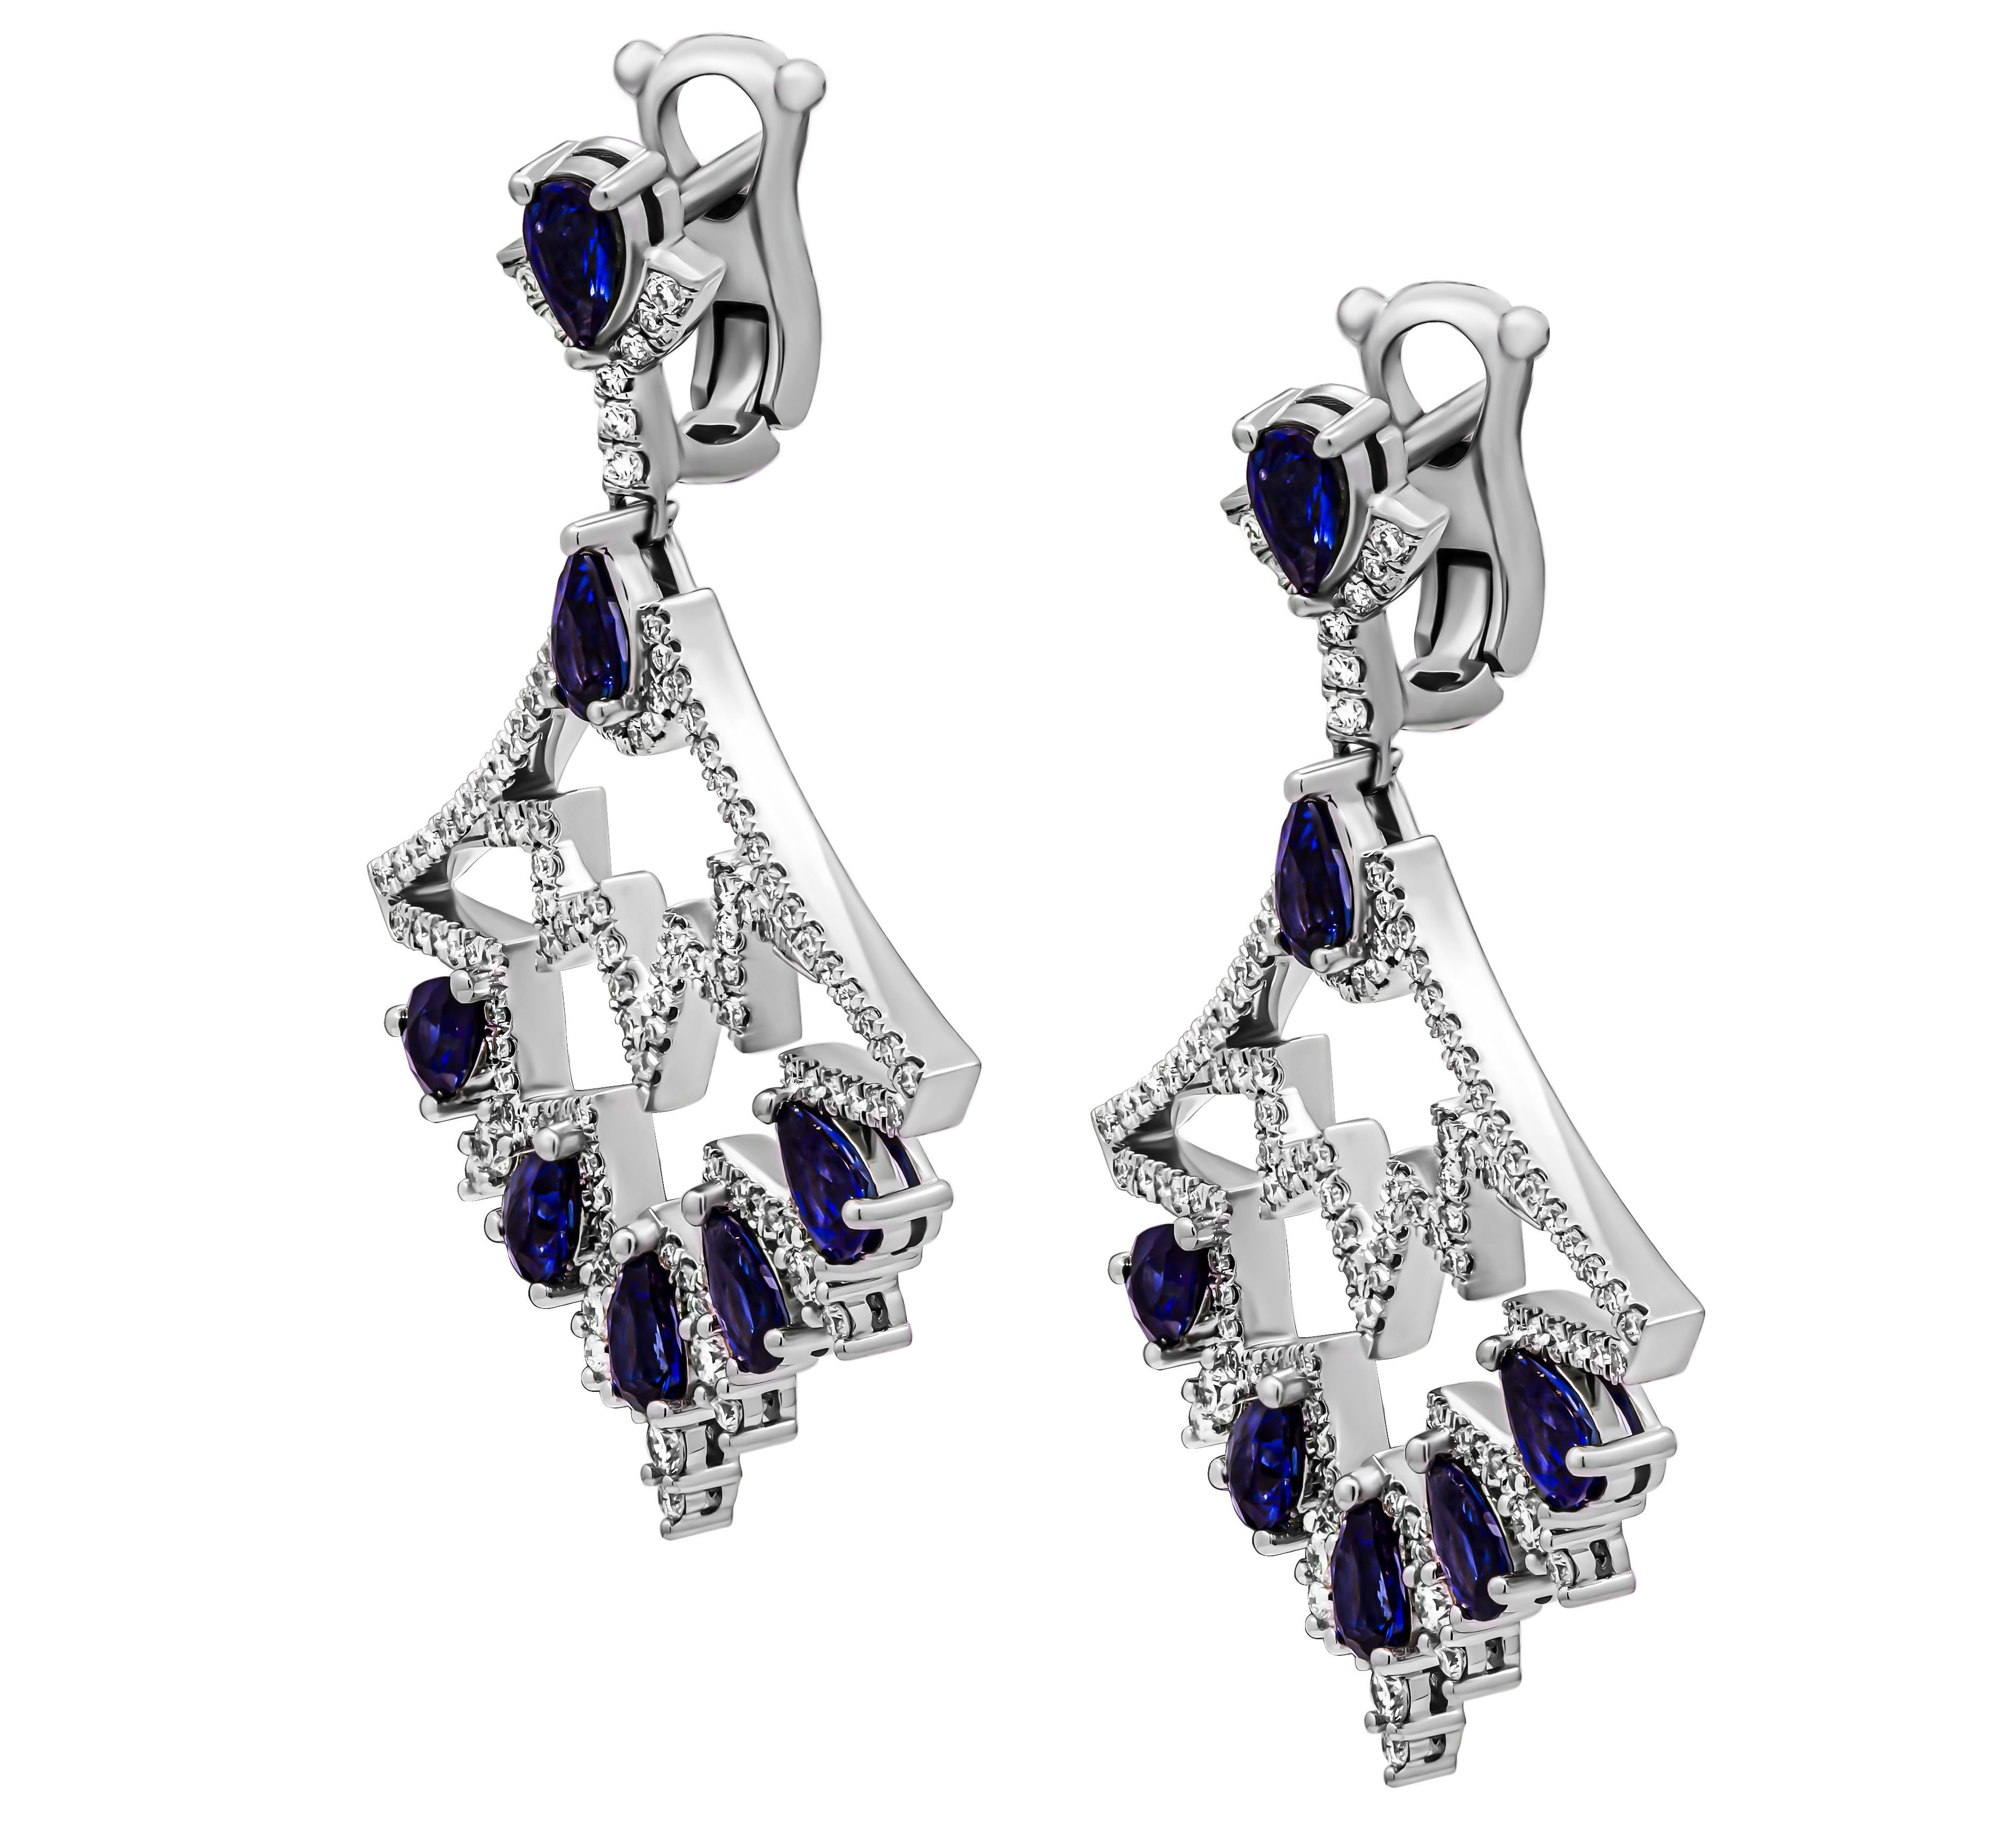 Wir stellen unsere atemberaubenden blauen Saphir-Kronleuchter-Diamant-Ohrringe vor, die mit viel Liebe zum Detail in glänzendem 18-karätigem Weißgold gefertigt wurden. Diese Ohrringe sind eine wahre Verkörperung von Raffinesse und Glamour. Sie